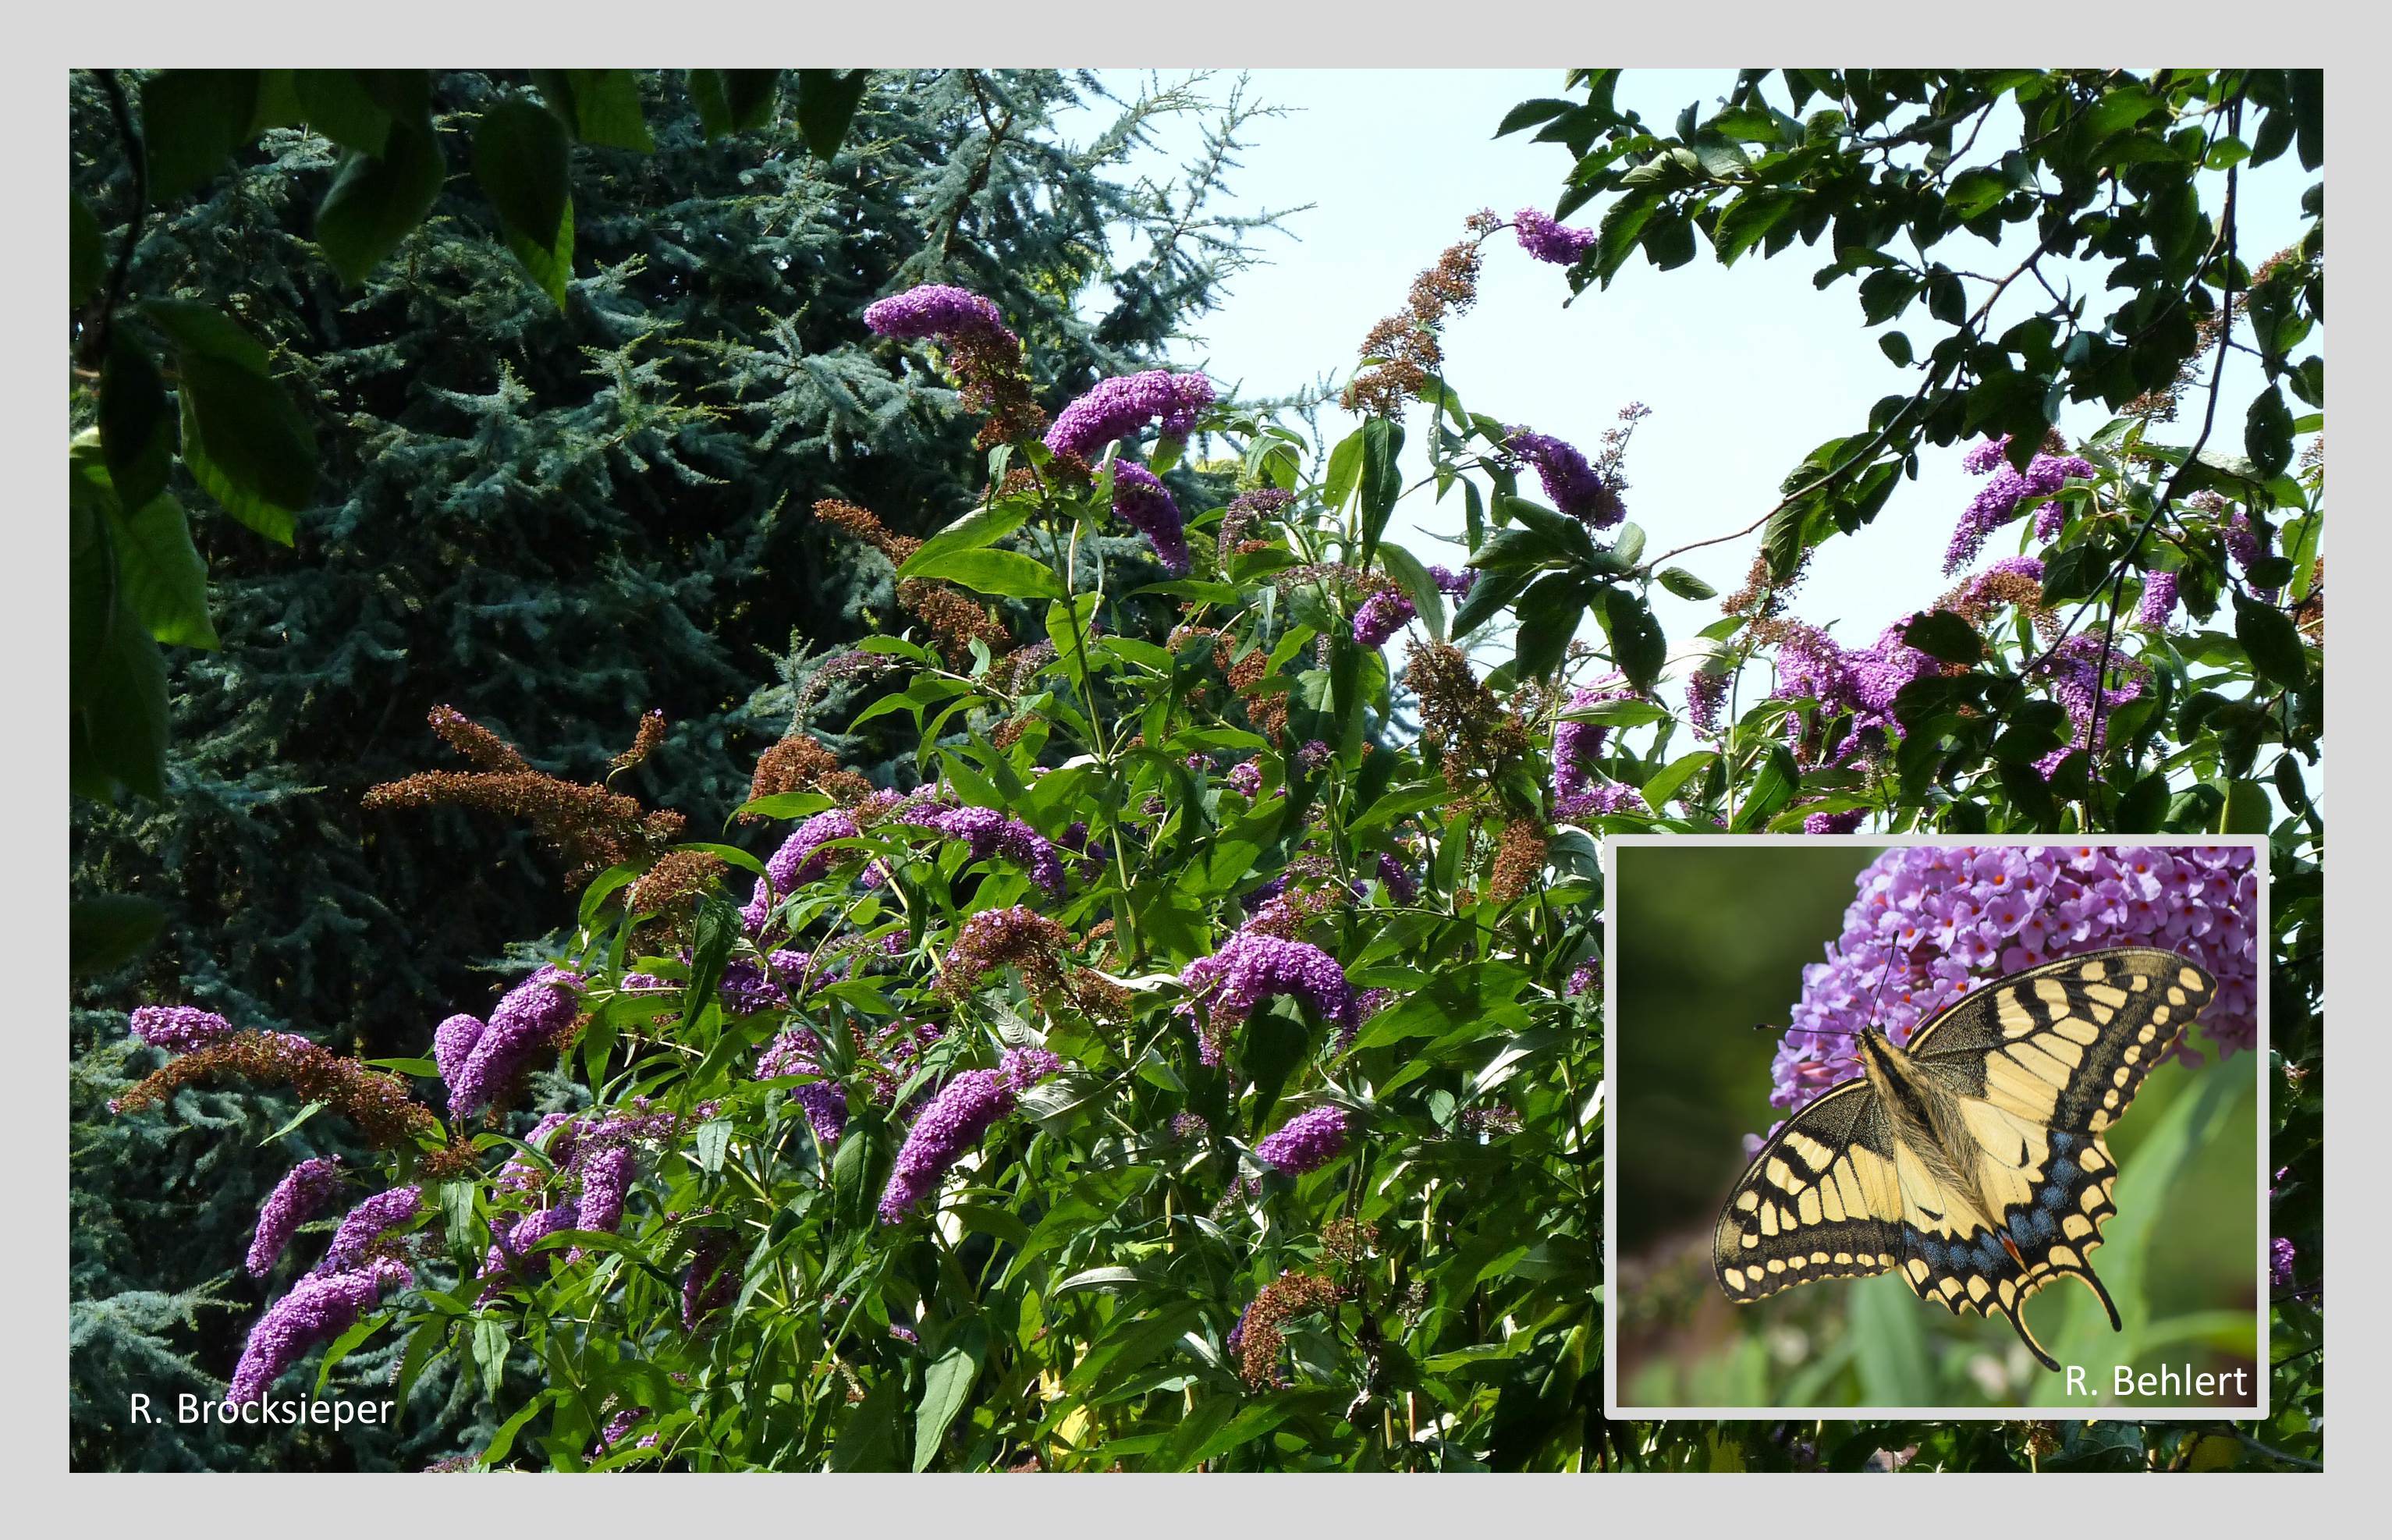 Der Sommerflieder (Buddleja davidii) hat eine lange, späte Blühphase (Juli bis September) und ist eine ausdauernde Nektarquelle für eine Vielzahl von Schmetterlingen, Bienen oder anderen Insekten – hier der prächtige Schwalbenschwanz.